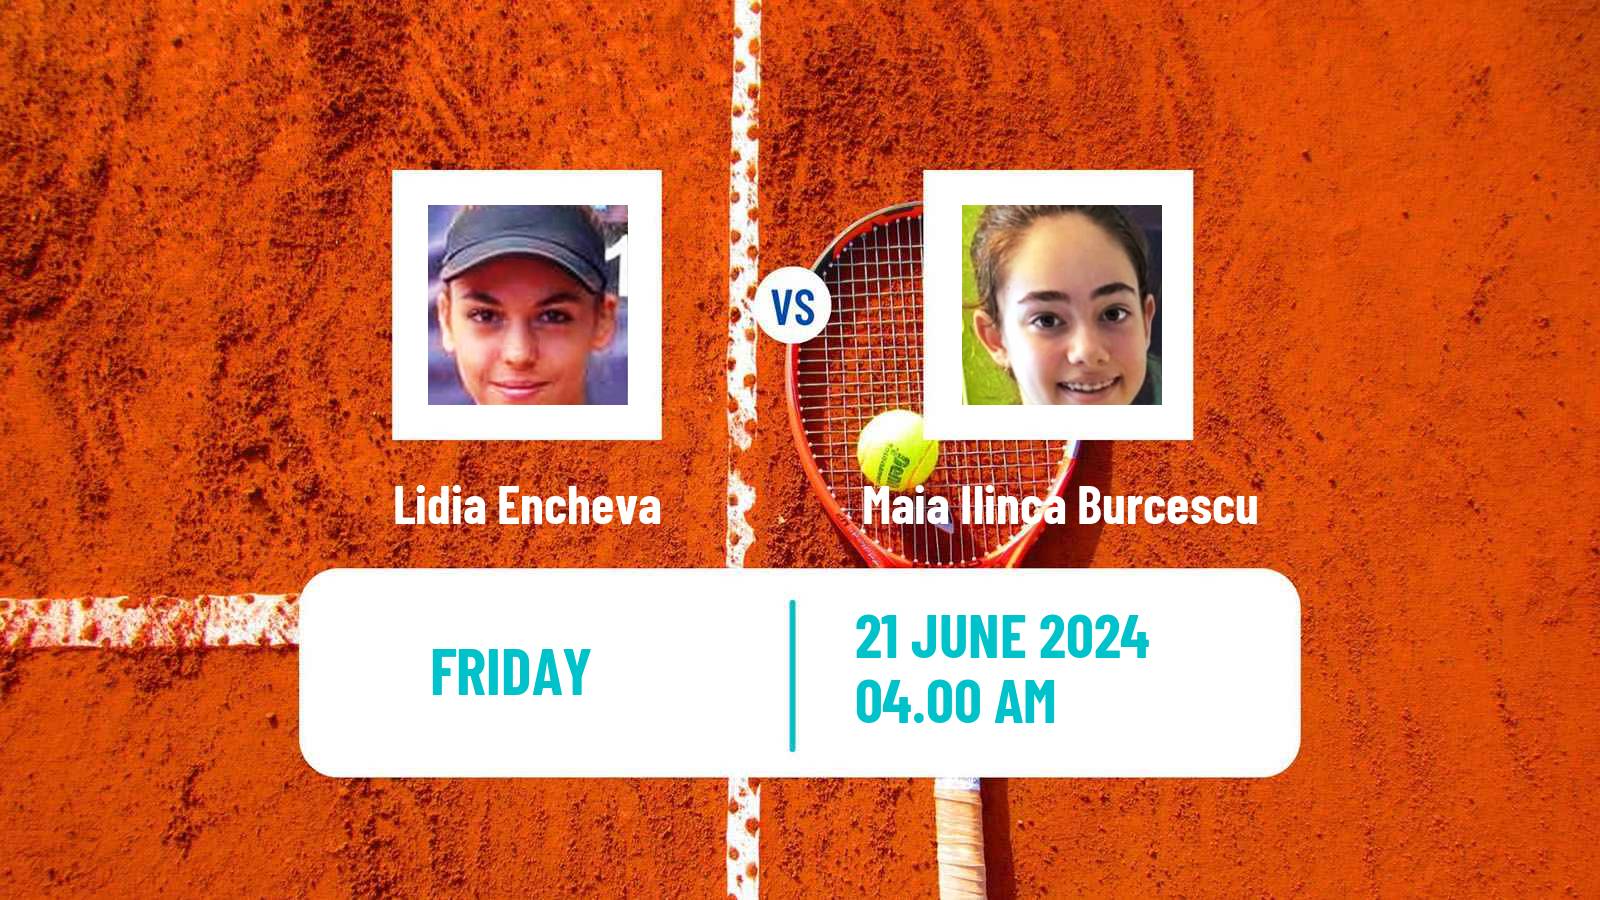 Tennis ITF W15 Bucharest 3 Women Lidia Encheva - Maia Ilinca Burcescu